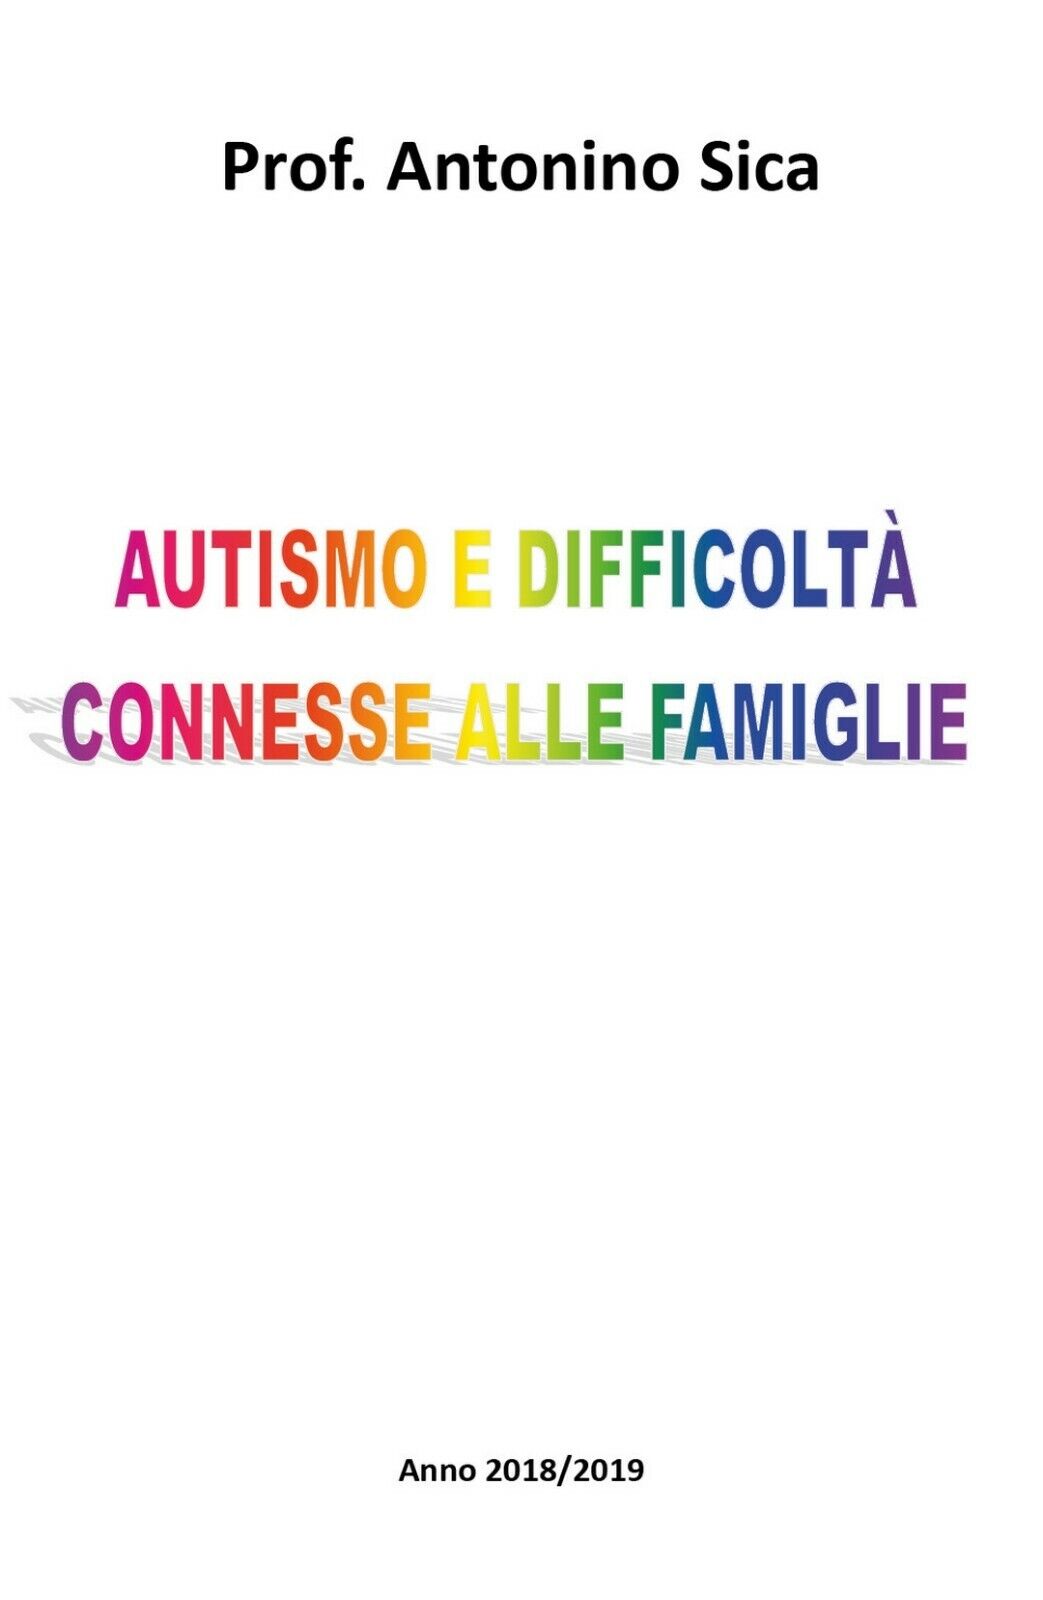 Autismo e difficolt? connesse alle famiglie, Antonino Sica,  2018,  Youcanprint